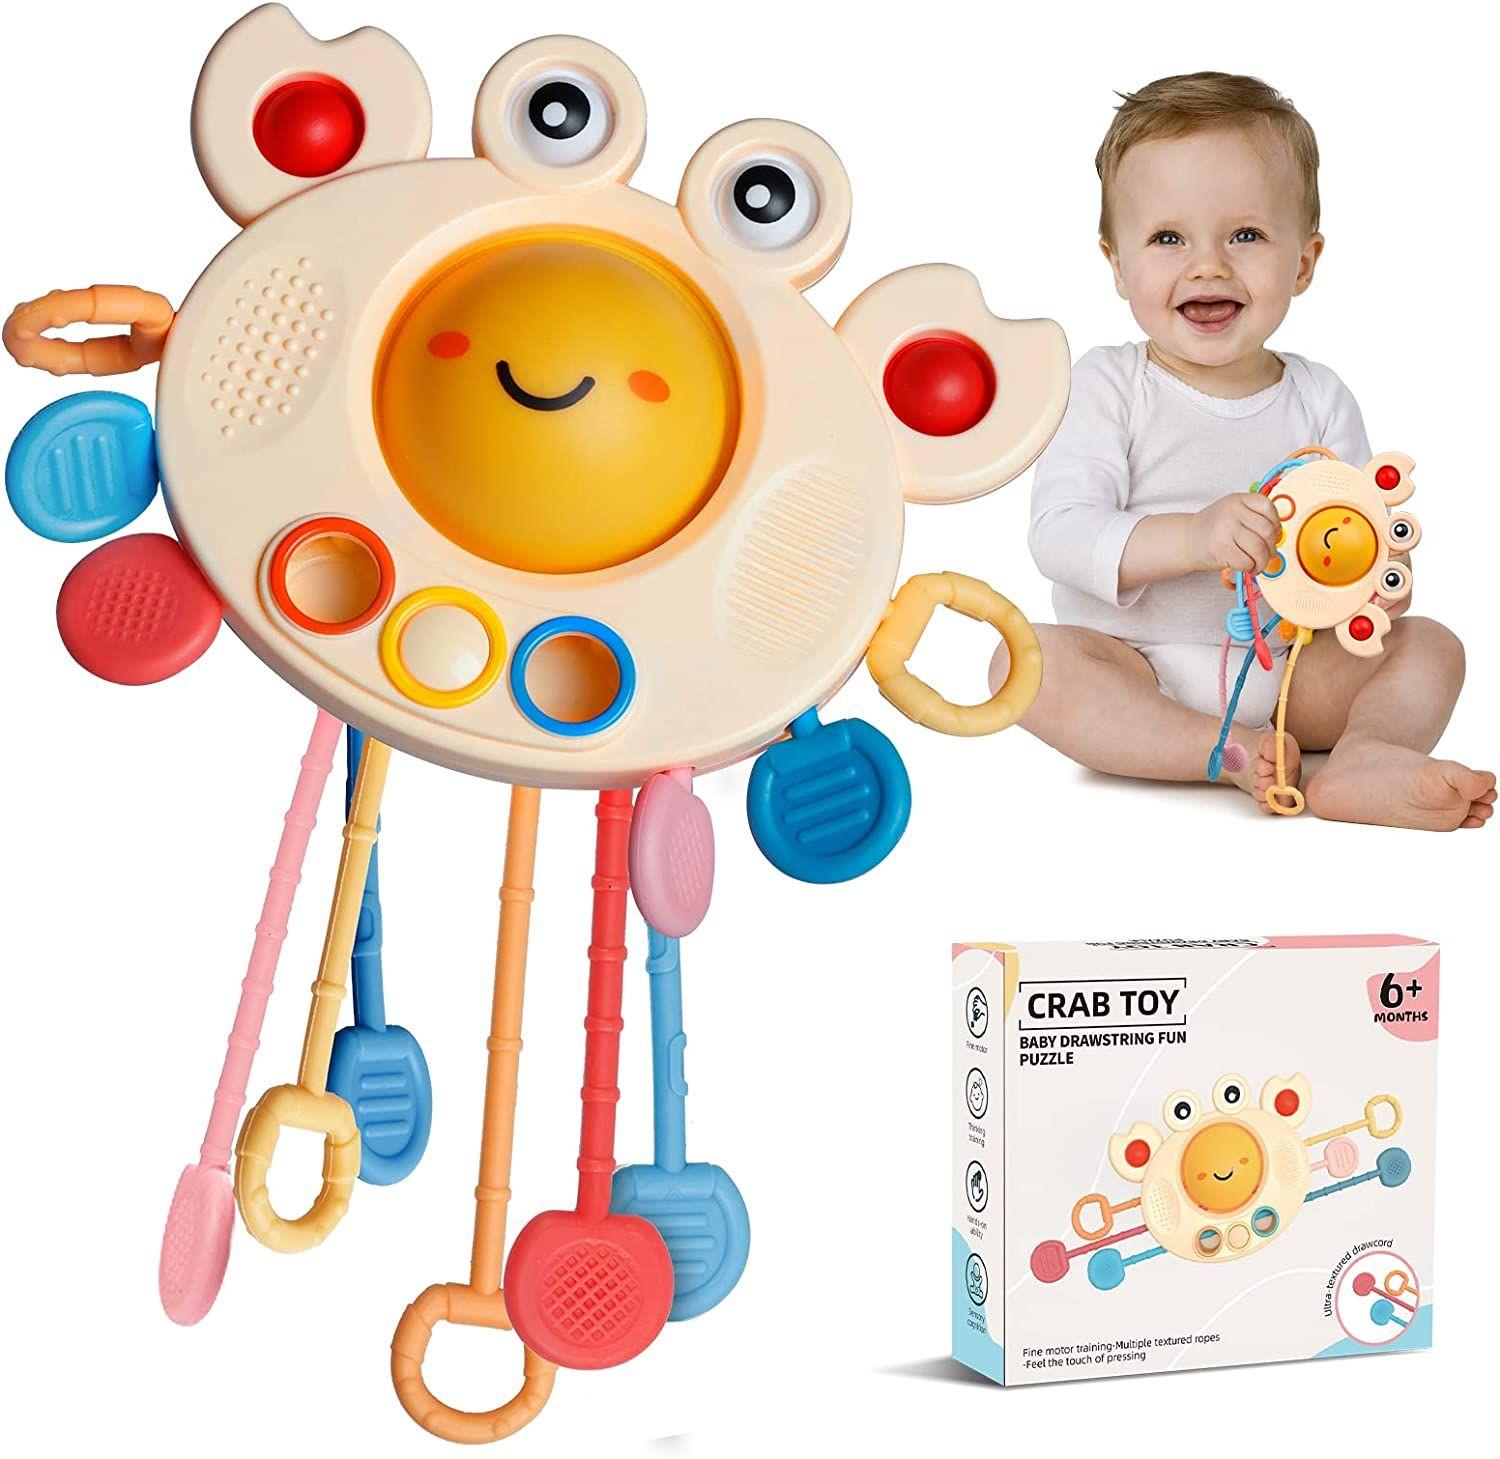 Activity-board Tapis d'eau bébé, jouets pour bébé de 3 6 9 mois, tapis de  jeu d'eau jouets sensoriels pour bébé l'éducation pour le développement  sensoriel précoce